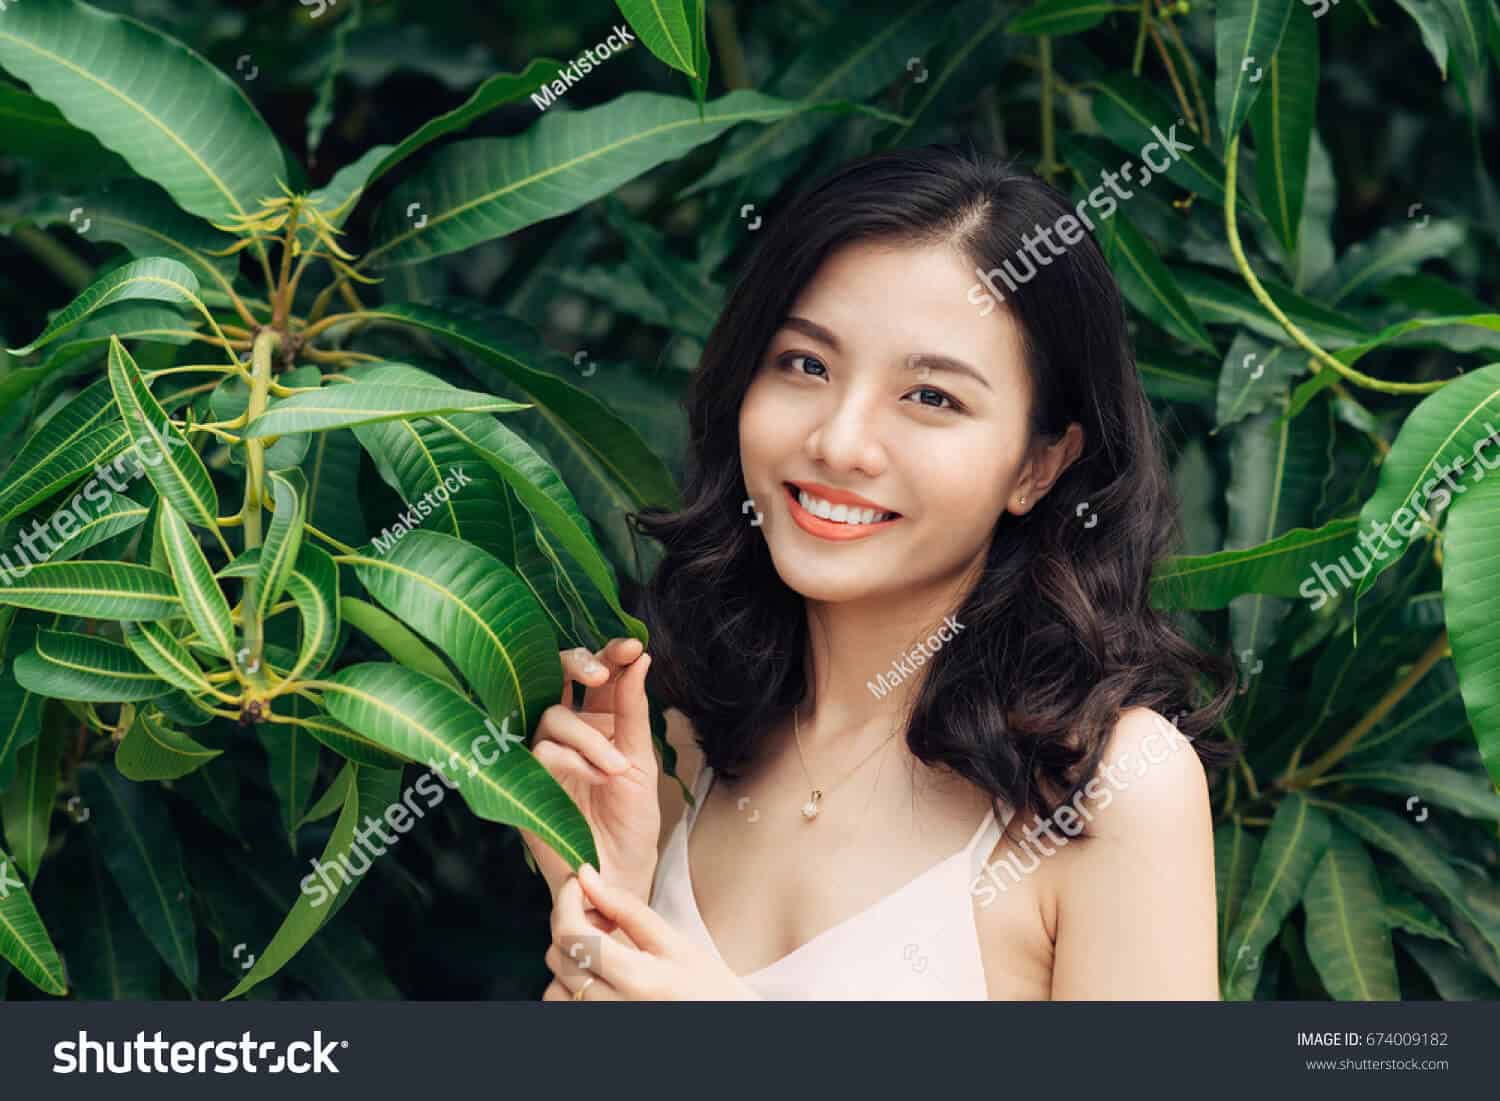 1 triệu 800 ngàn hình ảnh cô gái trẻ Châu Á chất lượng cao trên Shutterstock